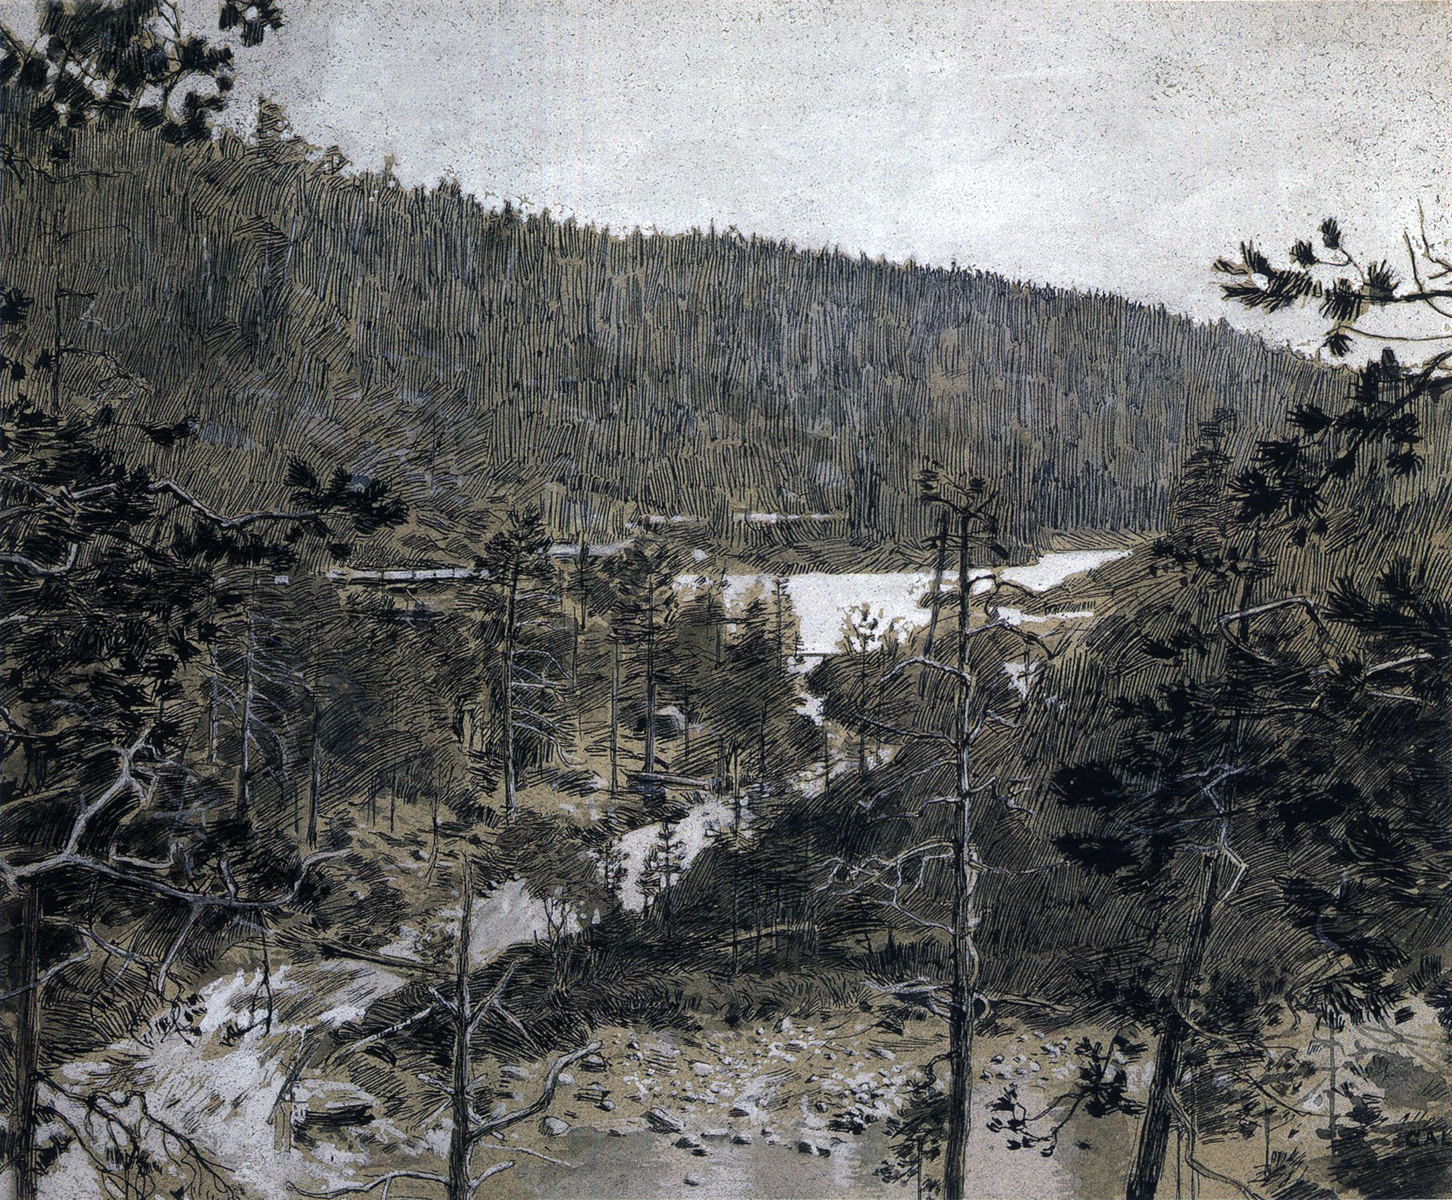 1892. Oulankajoki River landscape in Paanajärvi